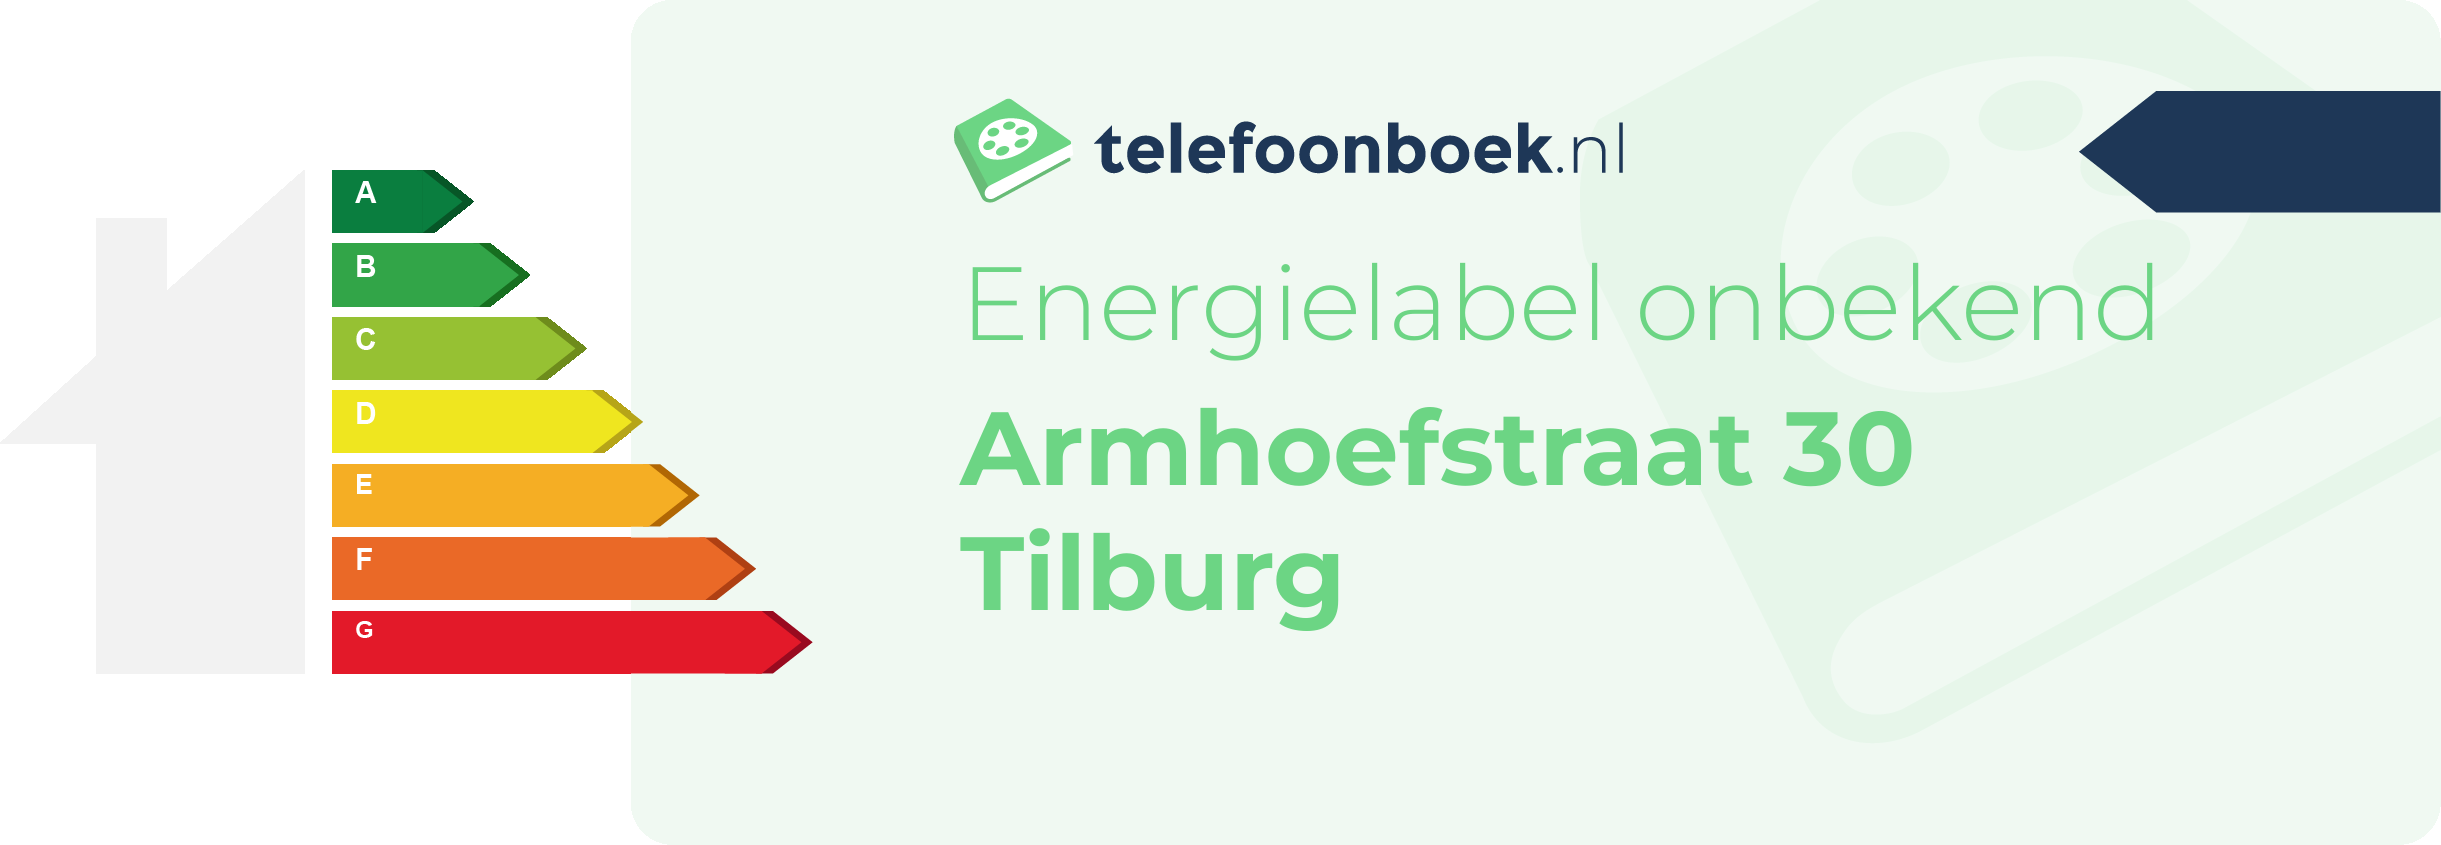 Energielabel Armhoefstraat 30 Tilburg